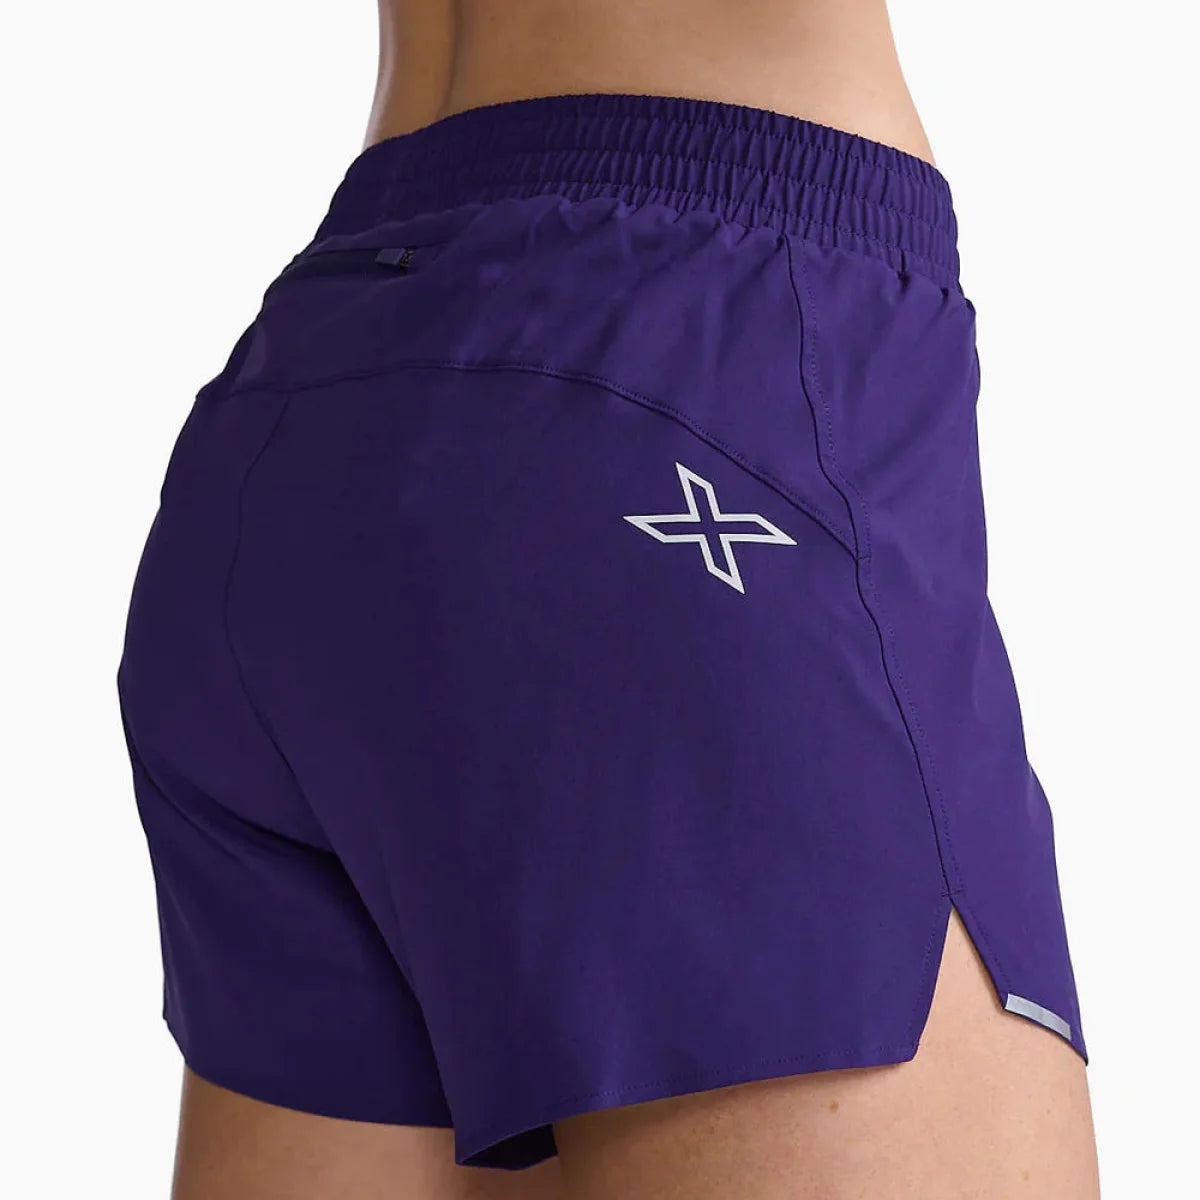 Women's 2XU Aero 5" Shorts